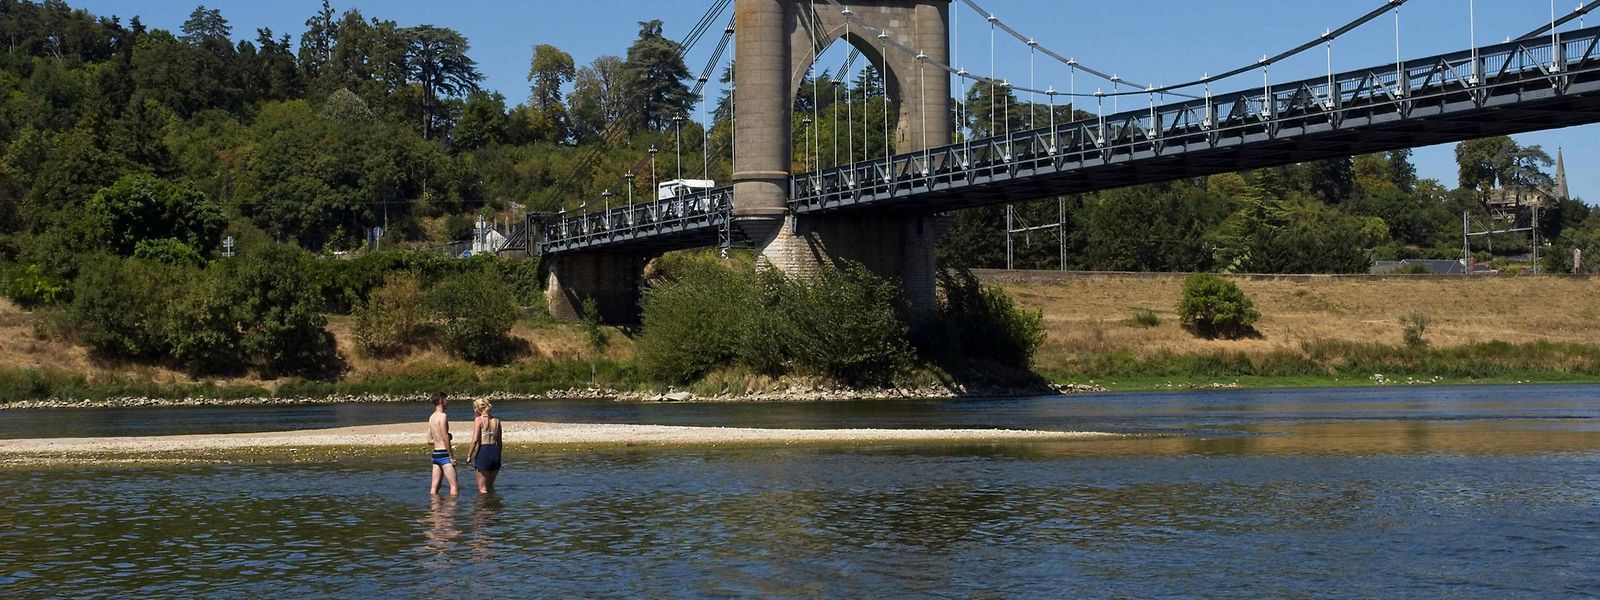 Die mehr als tausend Kilometer lange Loire dürfte in den kommenden Tagen einen neuen historischen Tiefstand erreichen. An einigen Stellen, wie hier in Langeais, kann man den sonst so übermächtigen Strom derzeit zu Fuß überqueren.